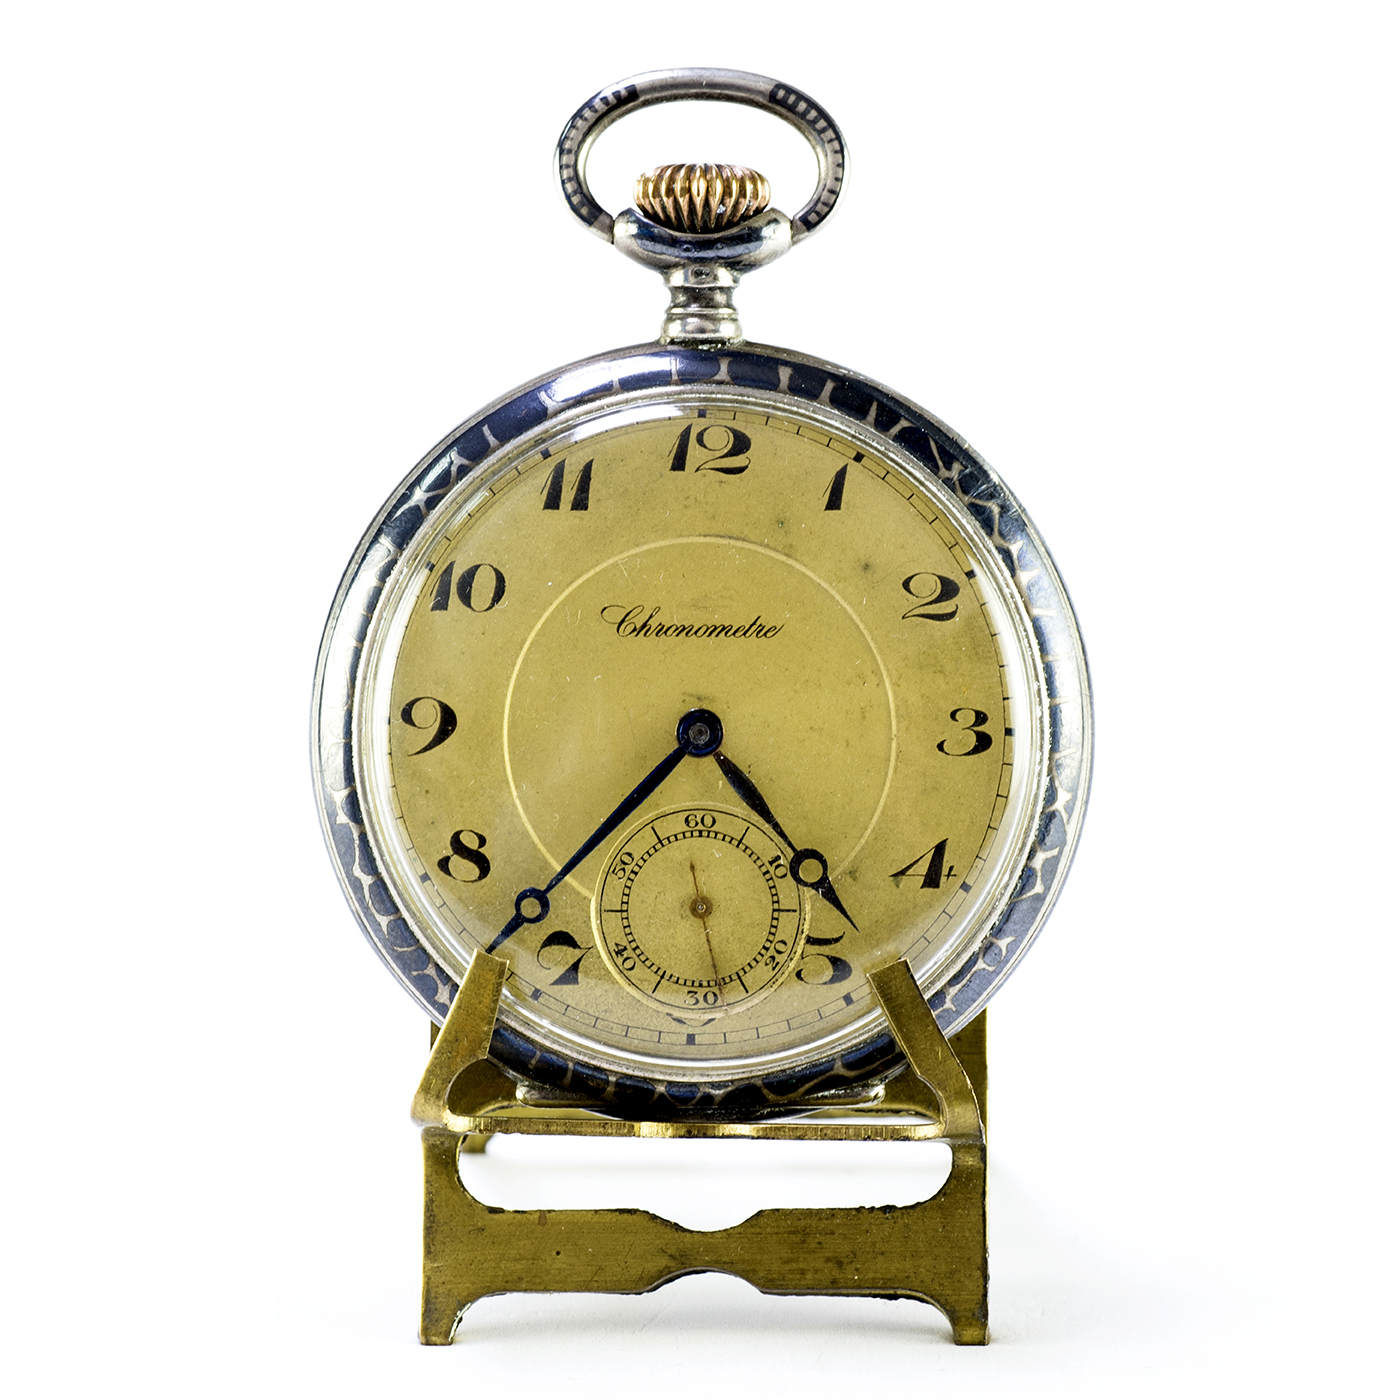 CHRONOMETRE. Reloj de bolsillo, lepine y remontoir. Alemania, ca. 1900